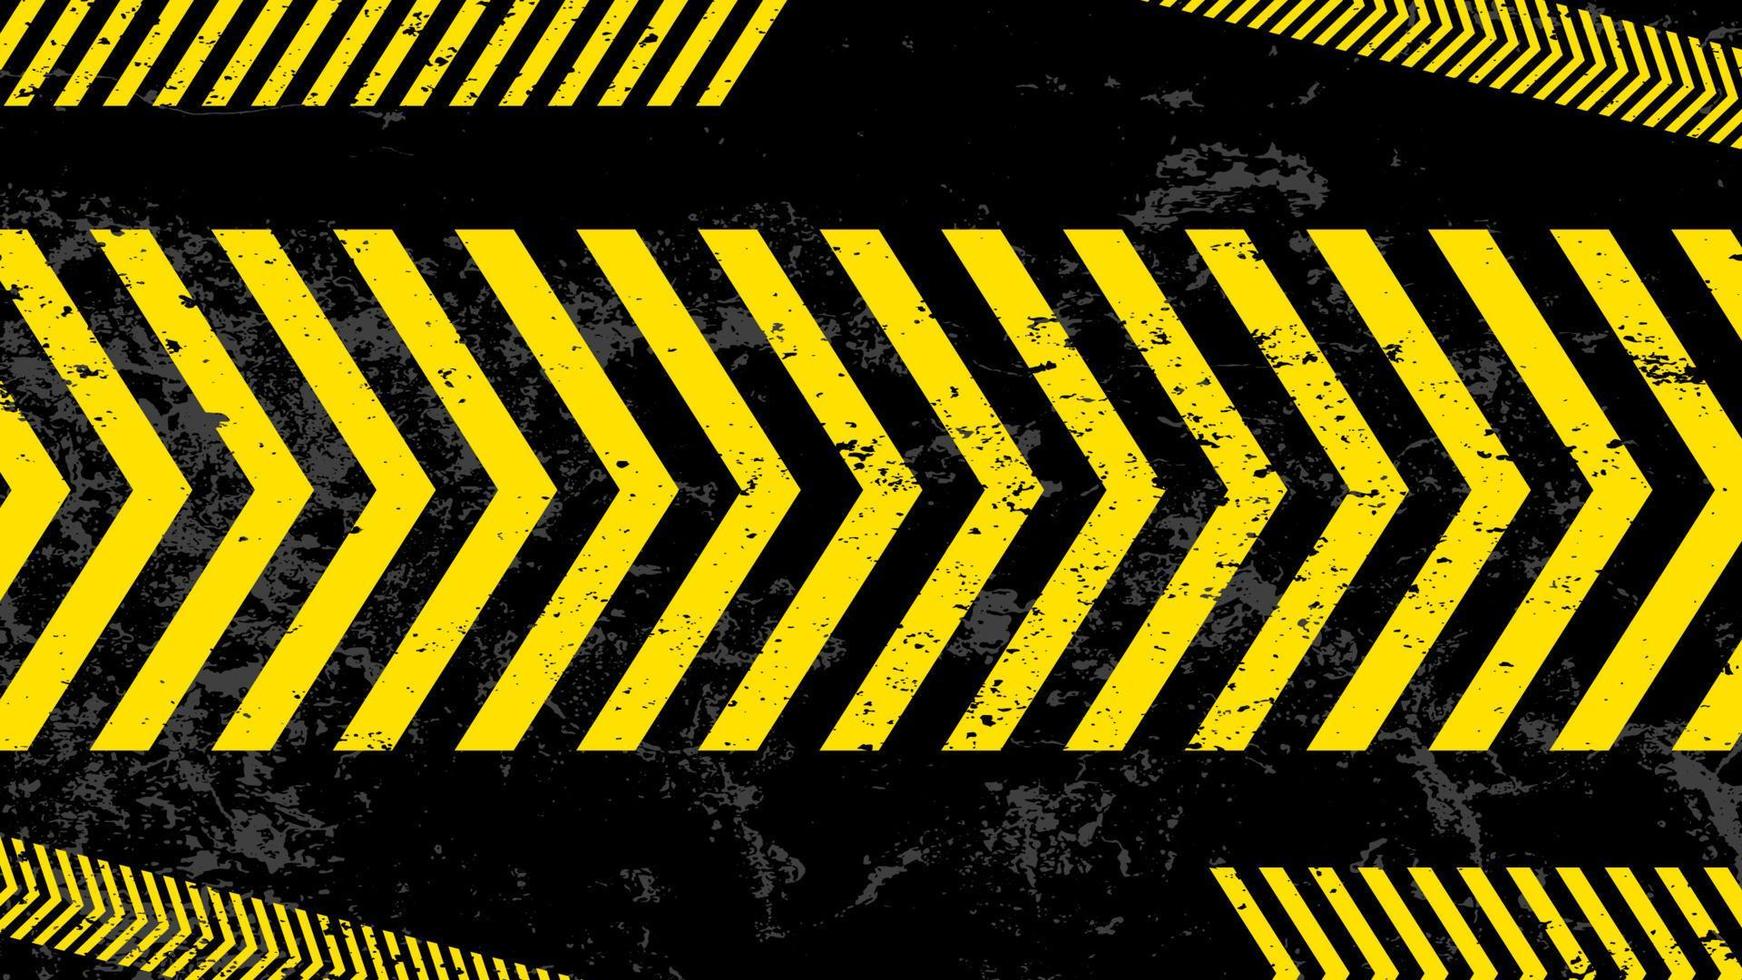 een grungy en versleten textuur van gevaarstrepen. abstracte waarschuwing gestreepte rechthoekige achtergrond, gele en zwarte strepen op de diagonaal, een waarschuwing om voorzichtig te zijn vector